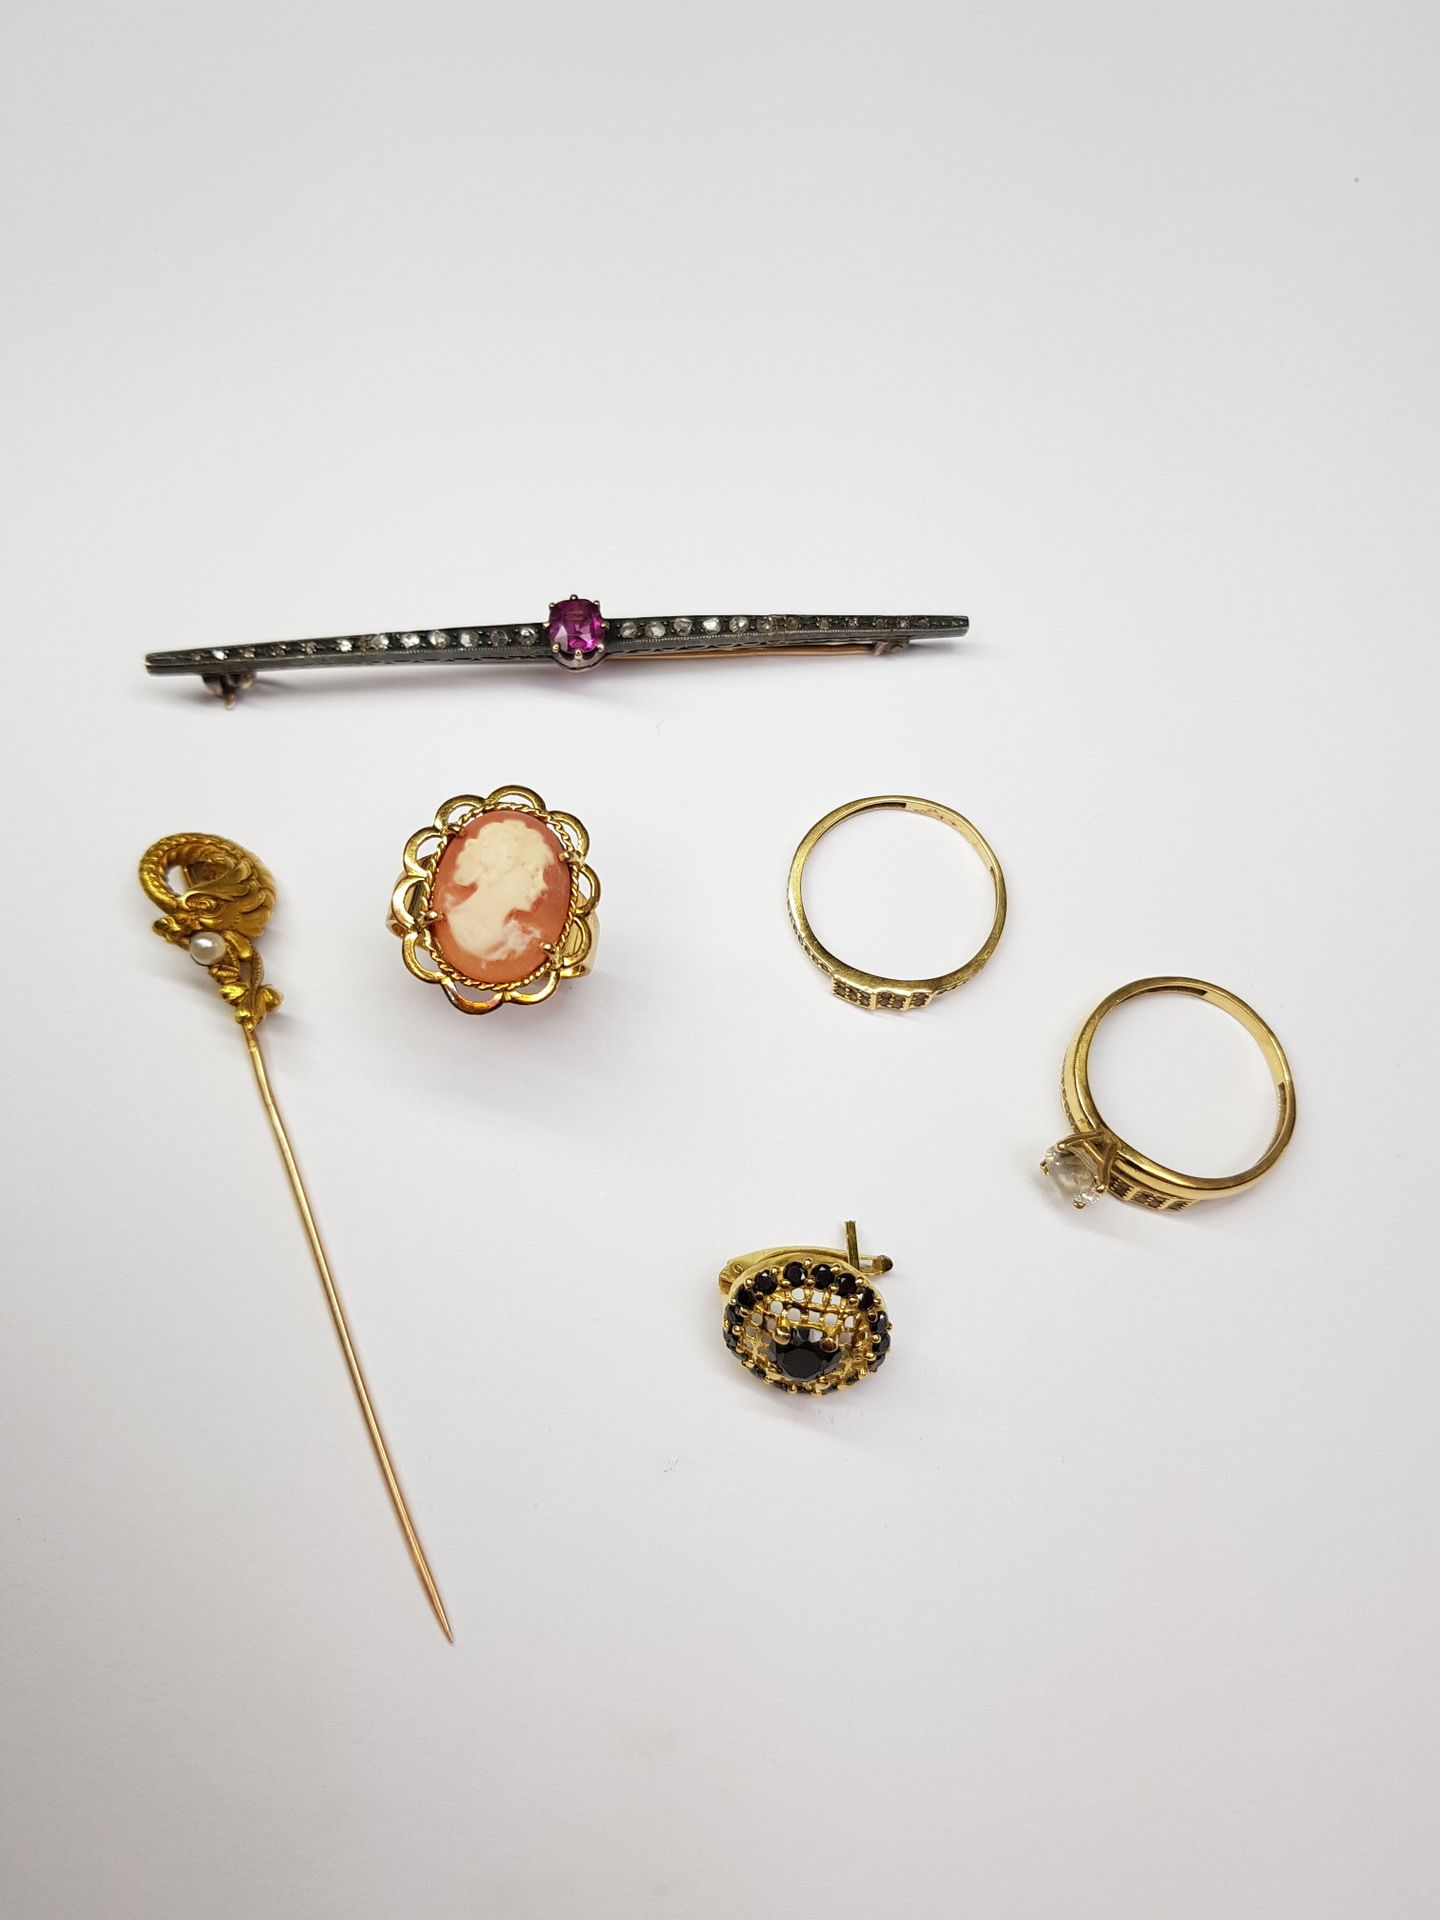 Null 一组750‰的黄金珠宝，包括一个贝壳浮雕戒指和一个装饰有粉红色碧玺和粉红色切割钻石的胸针

石头胸针的长度：8厘米

总毛重 : 20,67 g